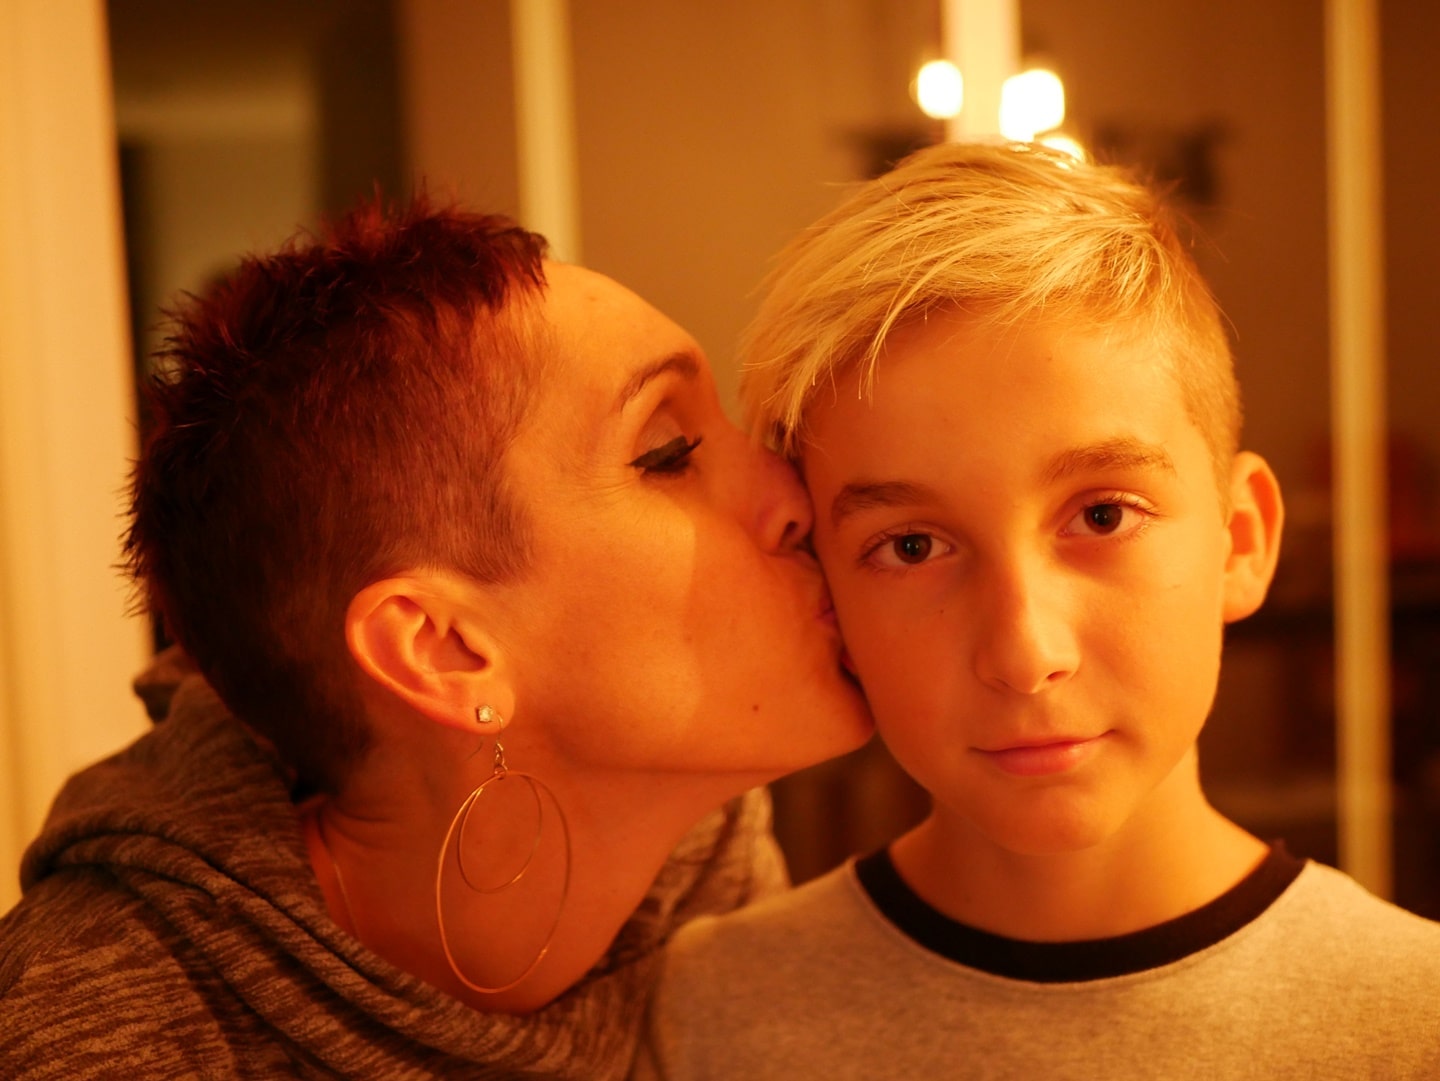 mum with hoop earrings kissing teenage son on the cheek